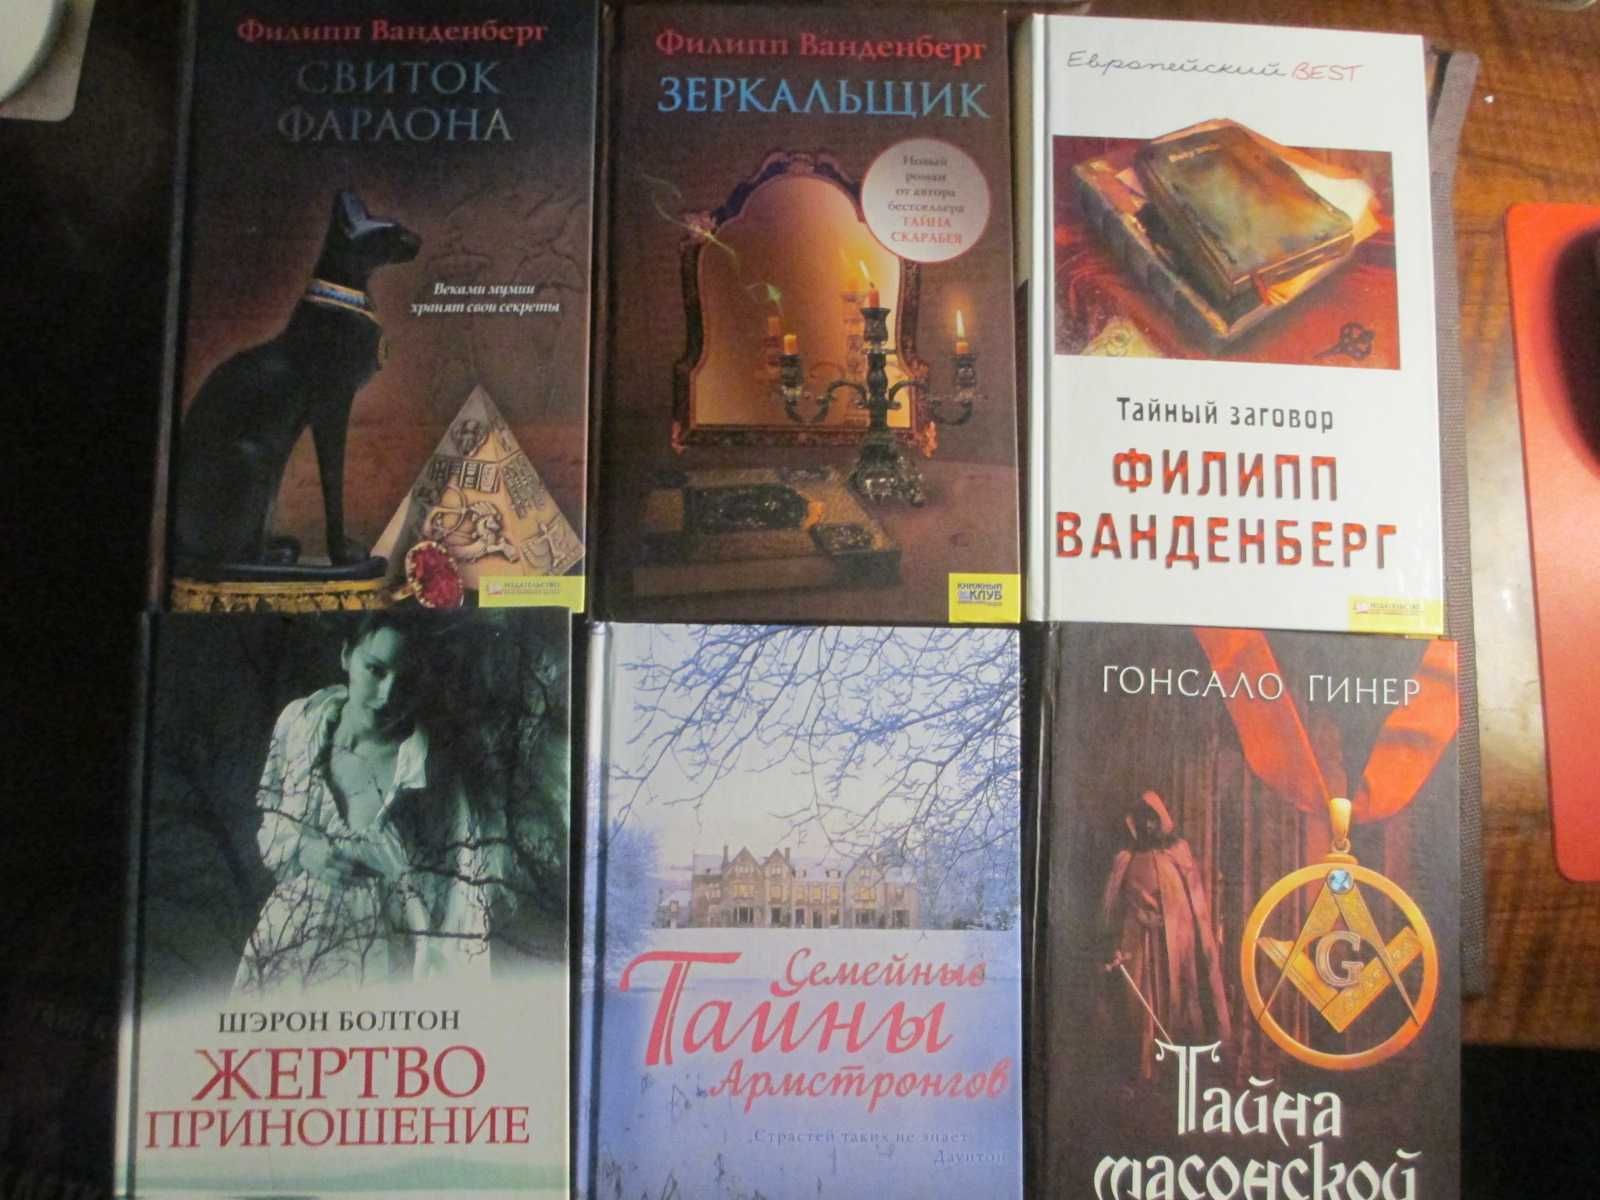 Книги издательства КСД на русском языке